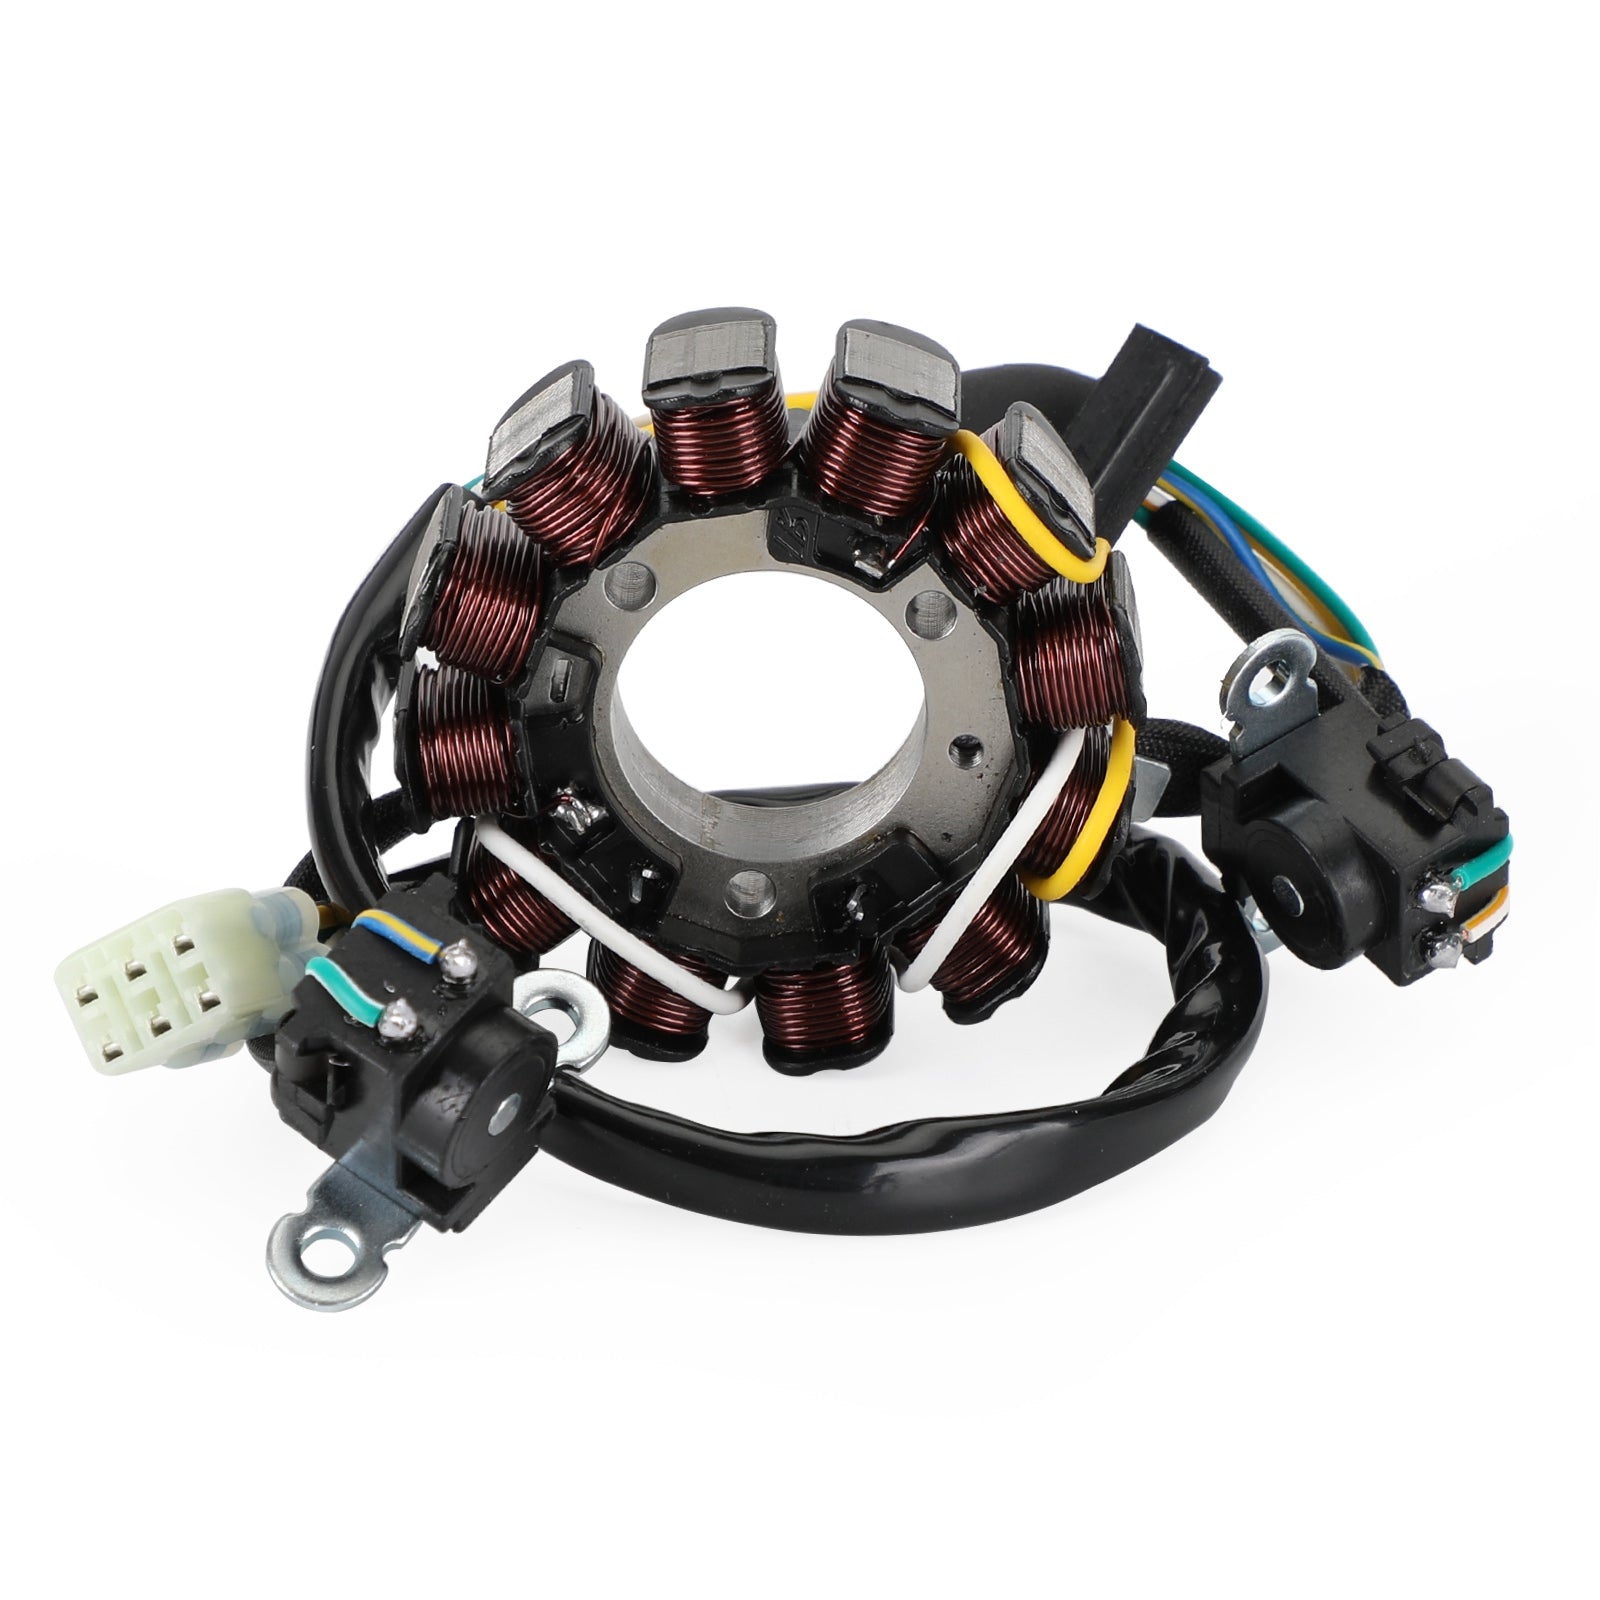 Magneto Coil Stator + Voltage Regulator + Gasket Assy For Honda CRF 250 R CRF250R 2013 Generic